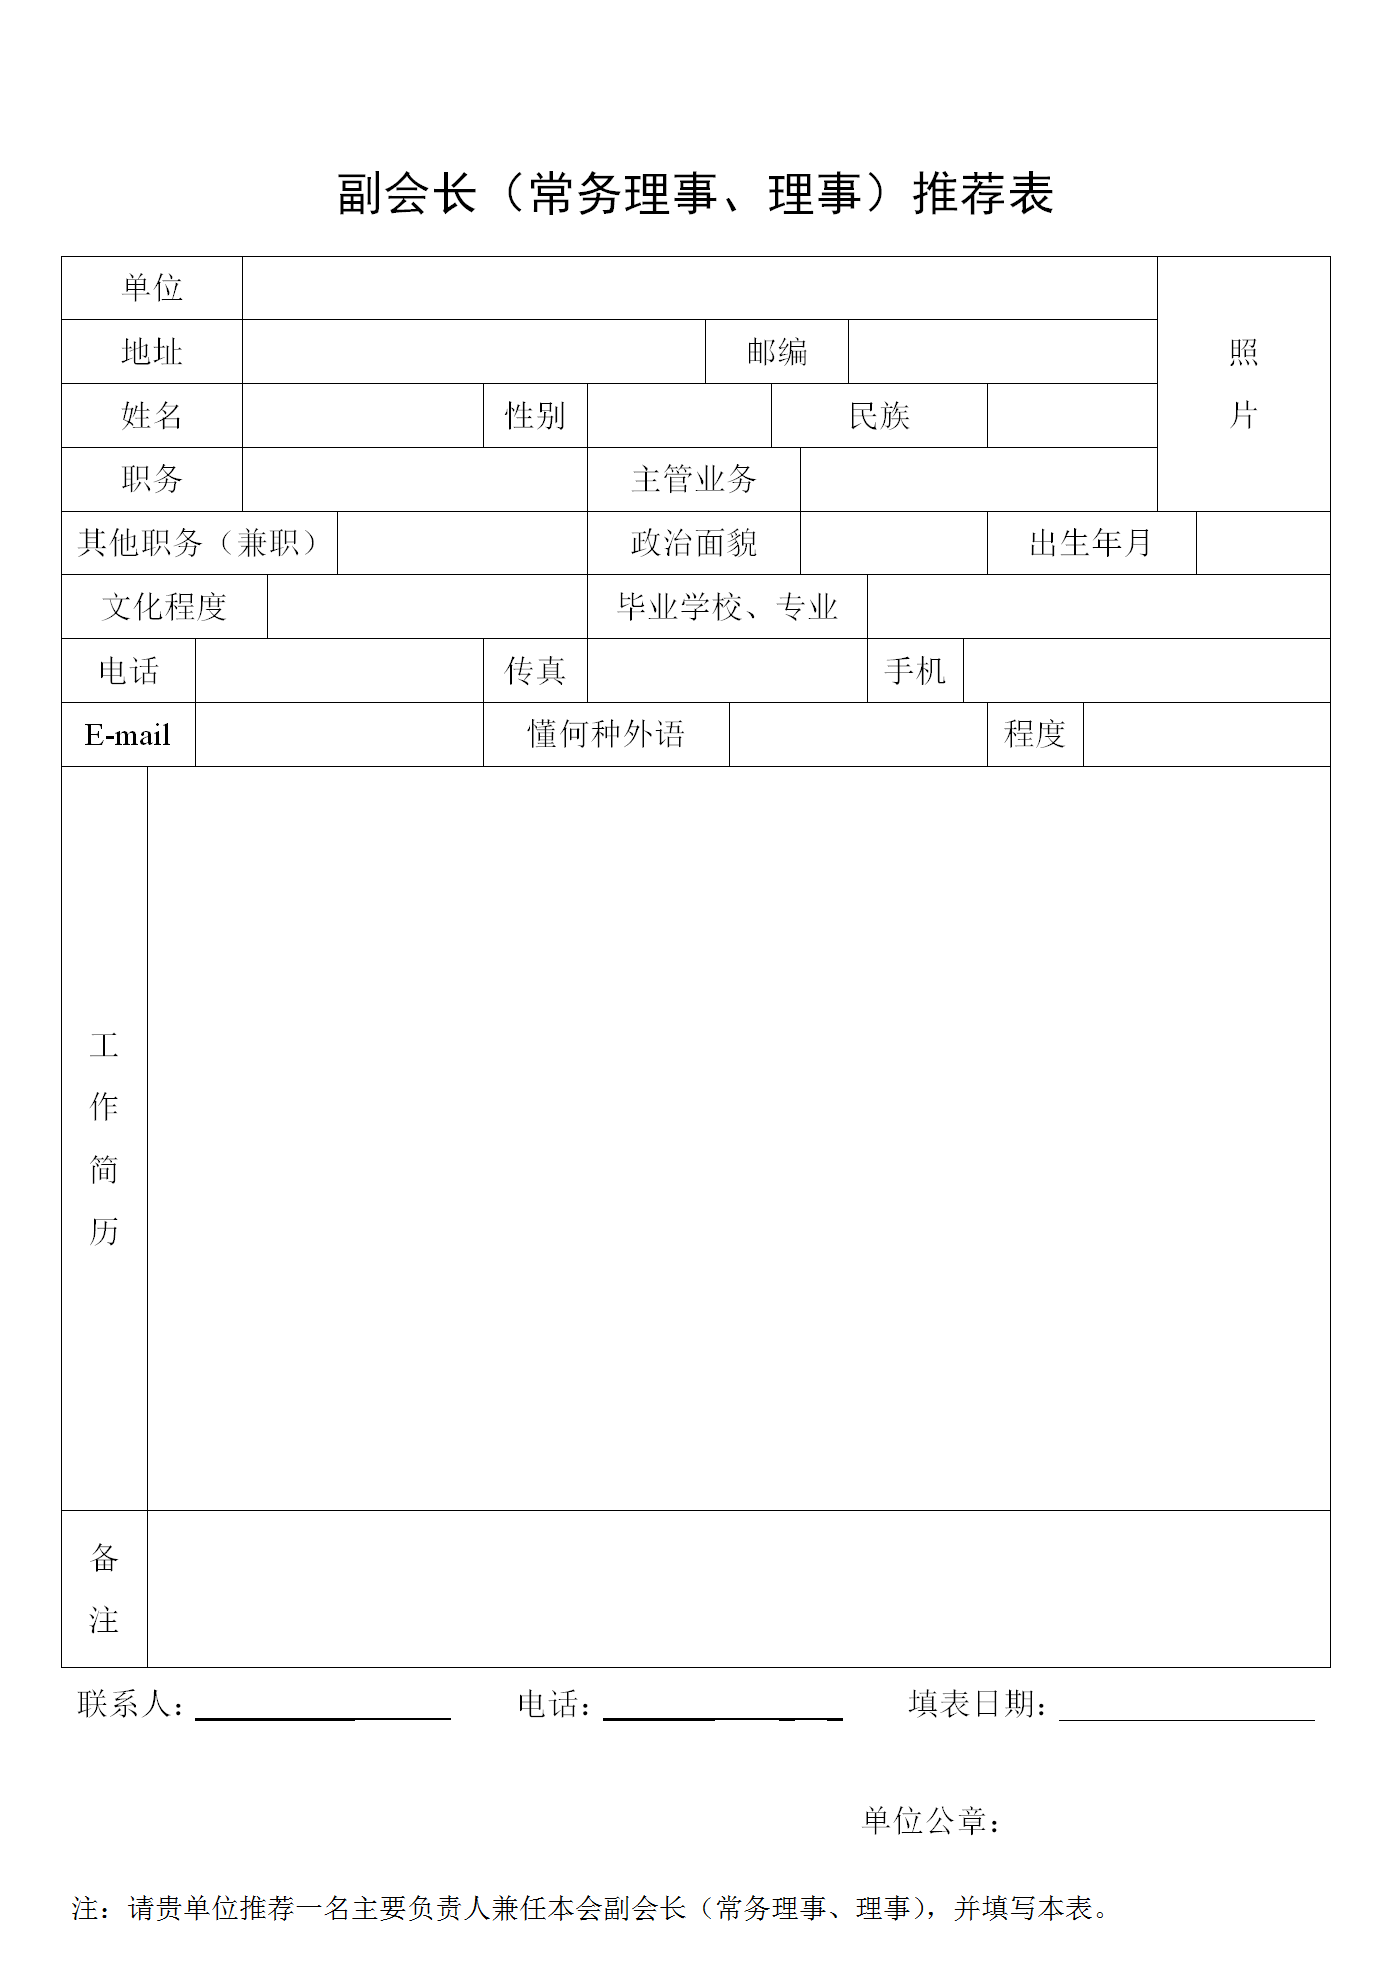 1_扬州市国际商会理事推荐表_01.png